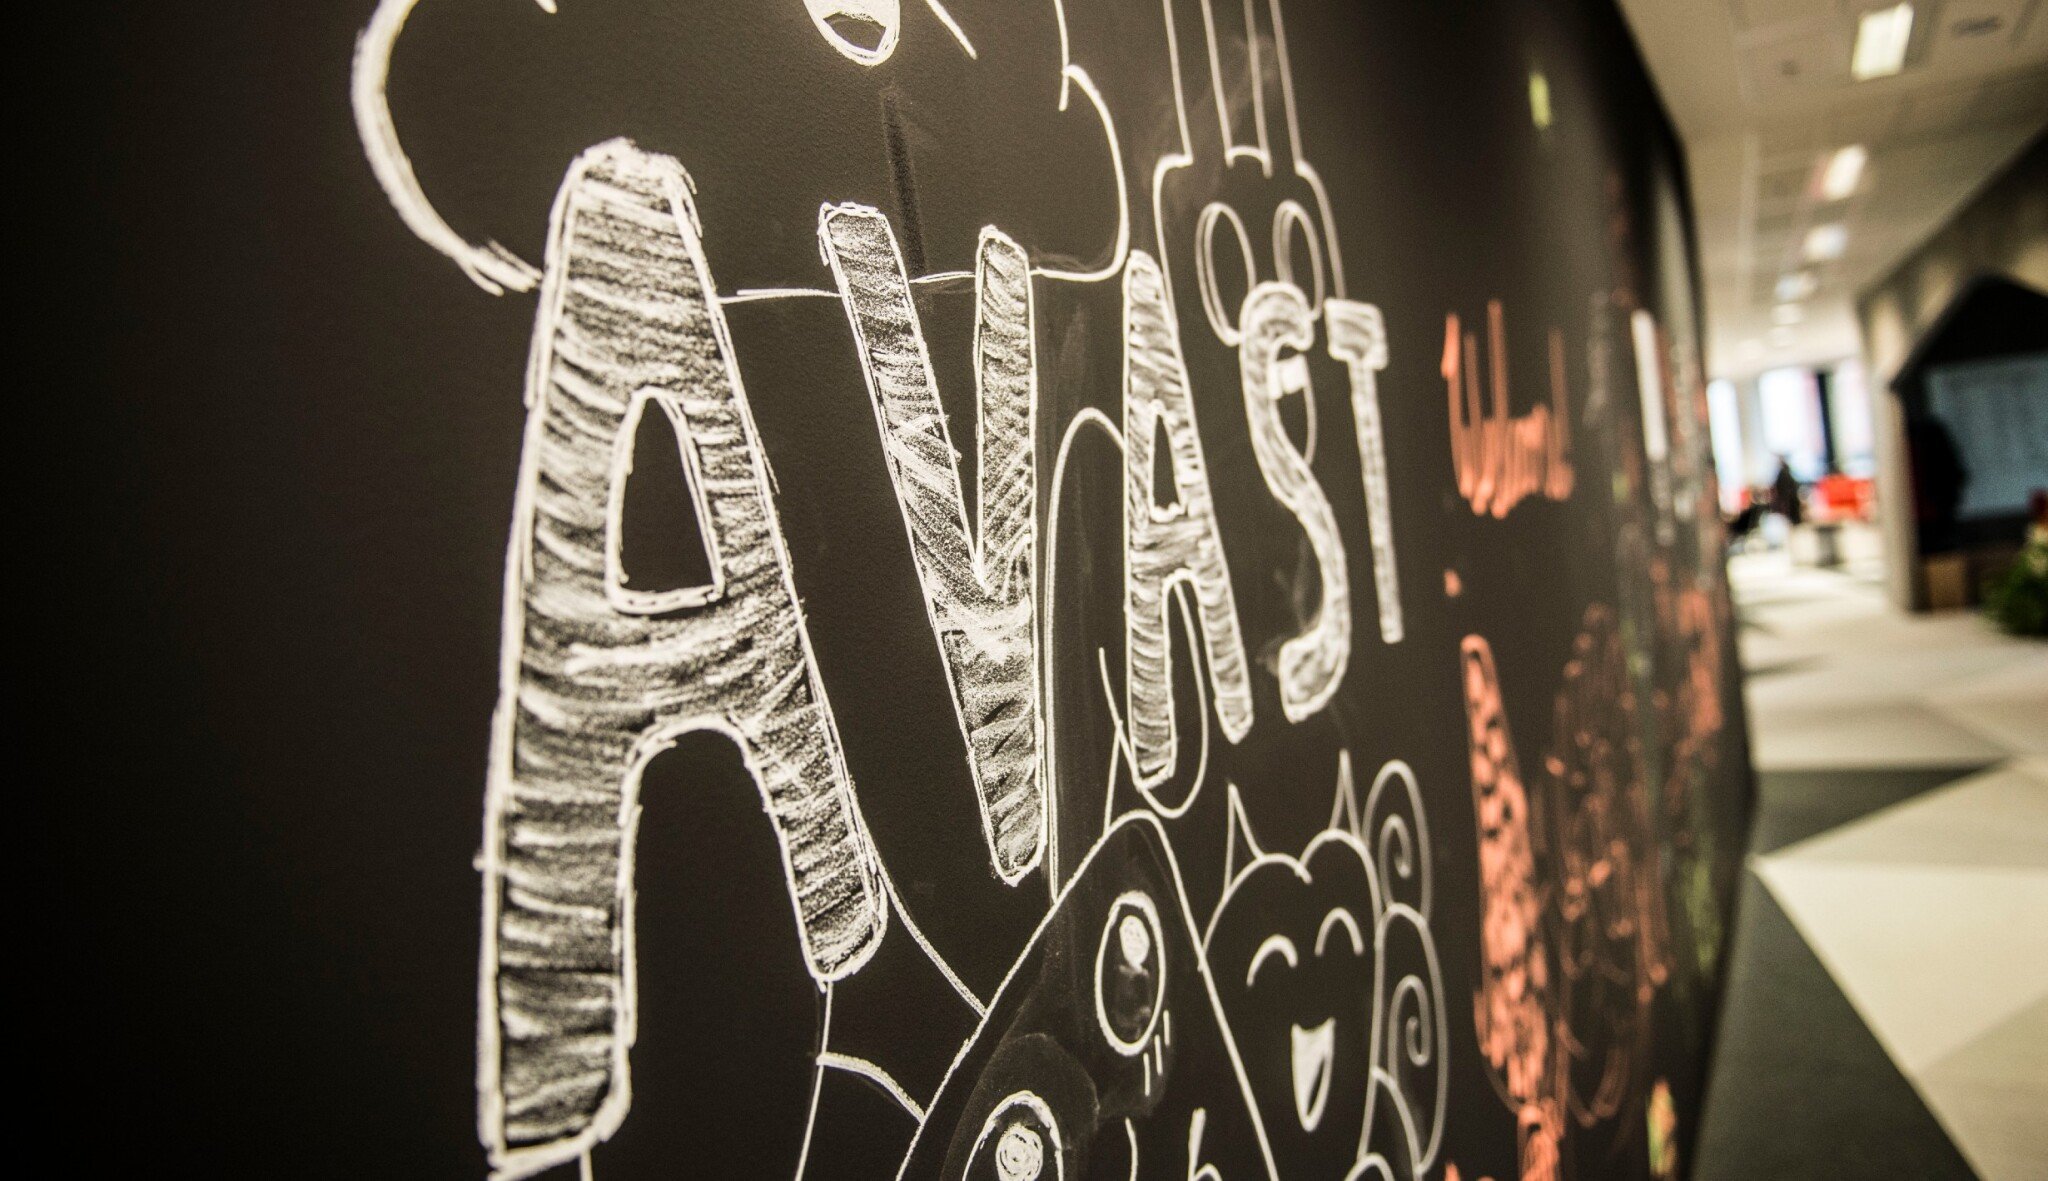 Avast vydělal 11 miliard a přibývají mu zákazníci. Letos očekáváme zdravý růst, říká Vlček